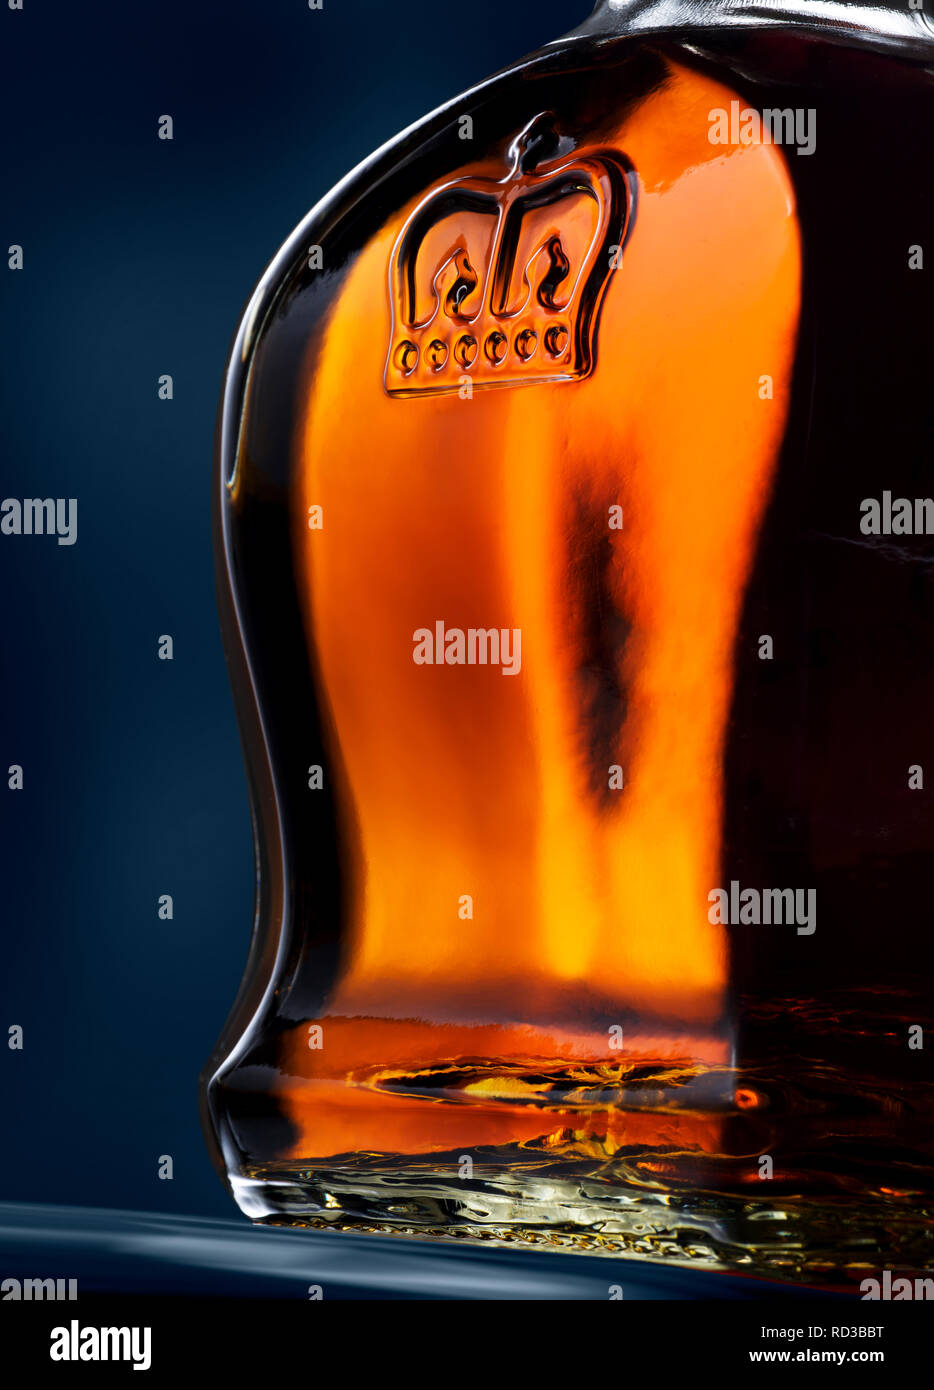 Imagen recortada del lado de Crown Royal whisky botella Foto de stock